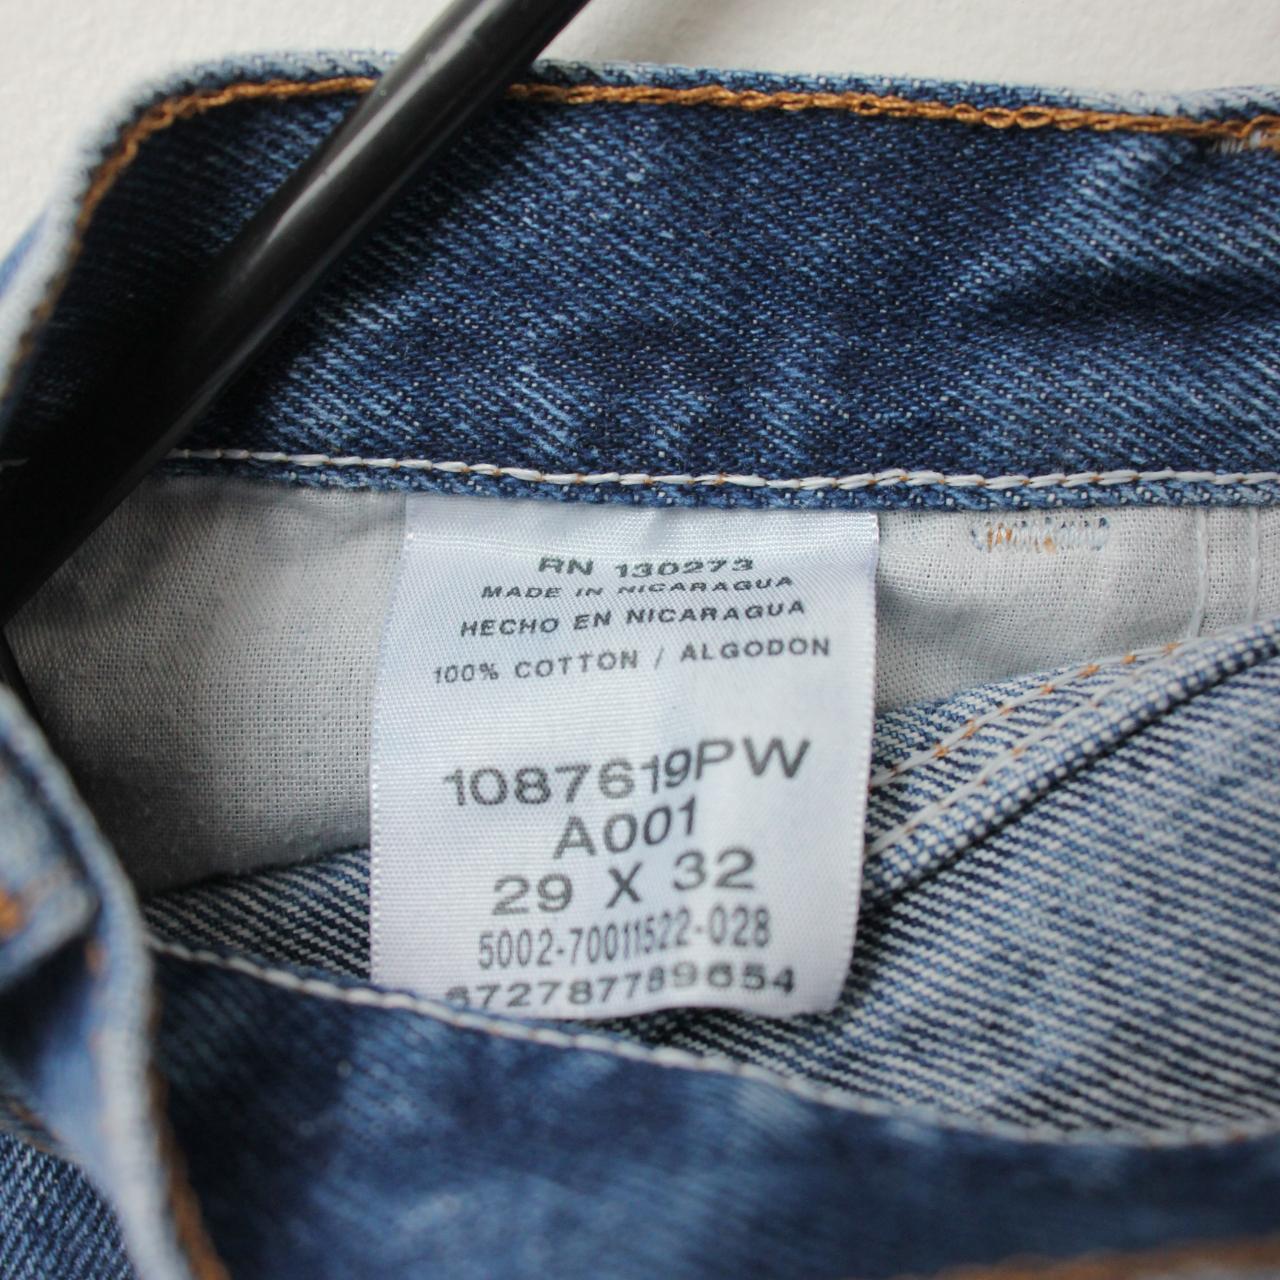 Rustler - Blue Jeans Measurements: 29